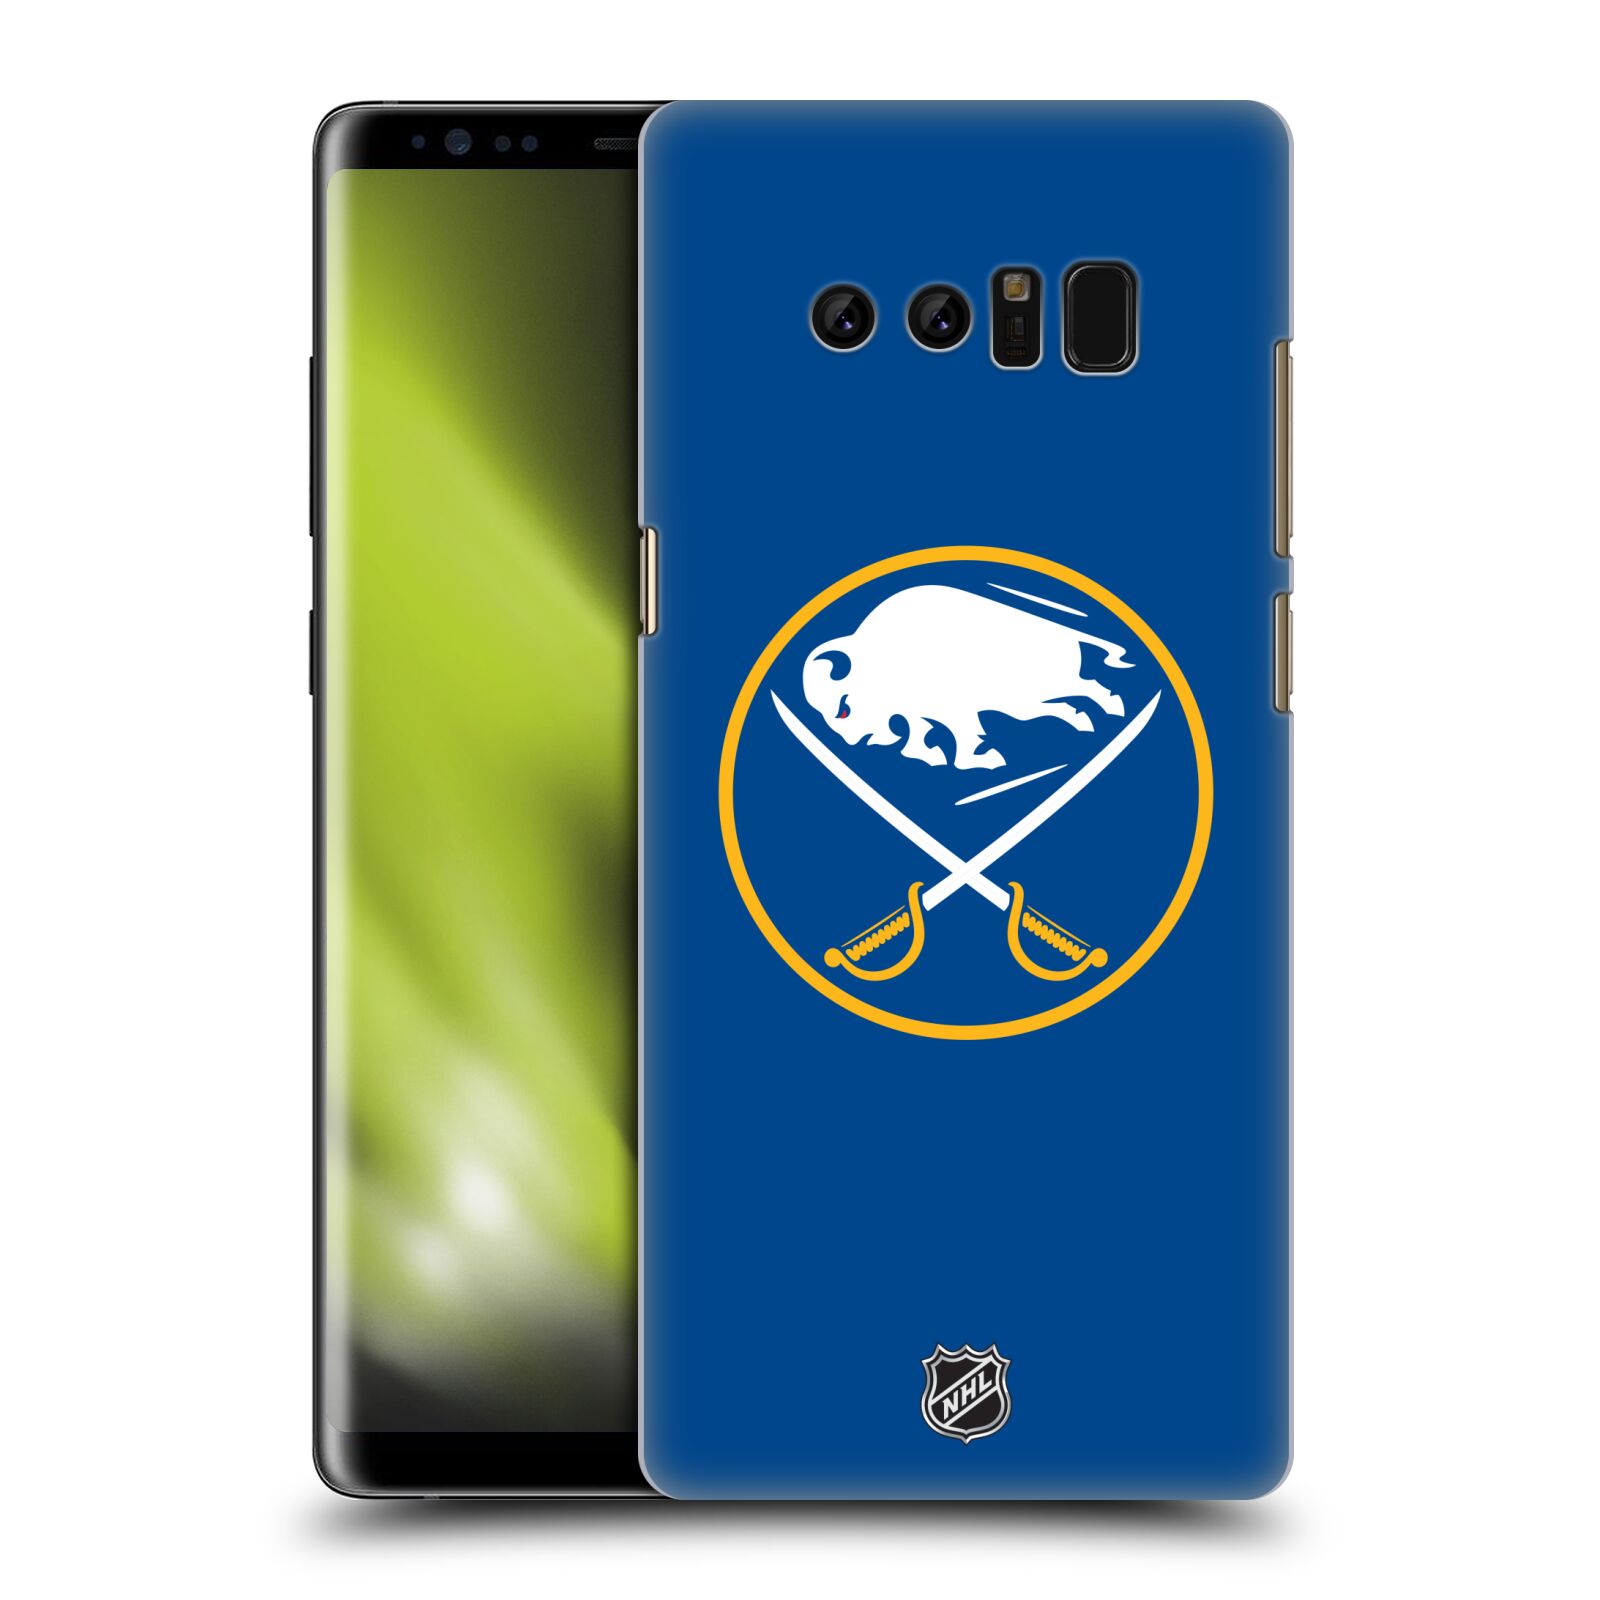 Pouzdro na mobil Samsung Galaxy Note 8 - HEAD CASE - Hokej NHL - Buffalo Sabres - modré pozadí